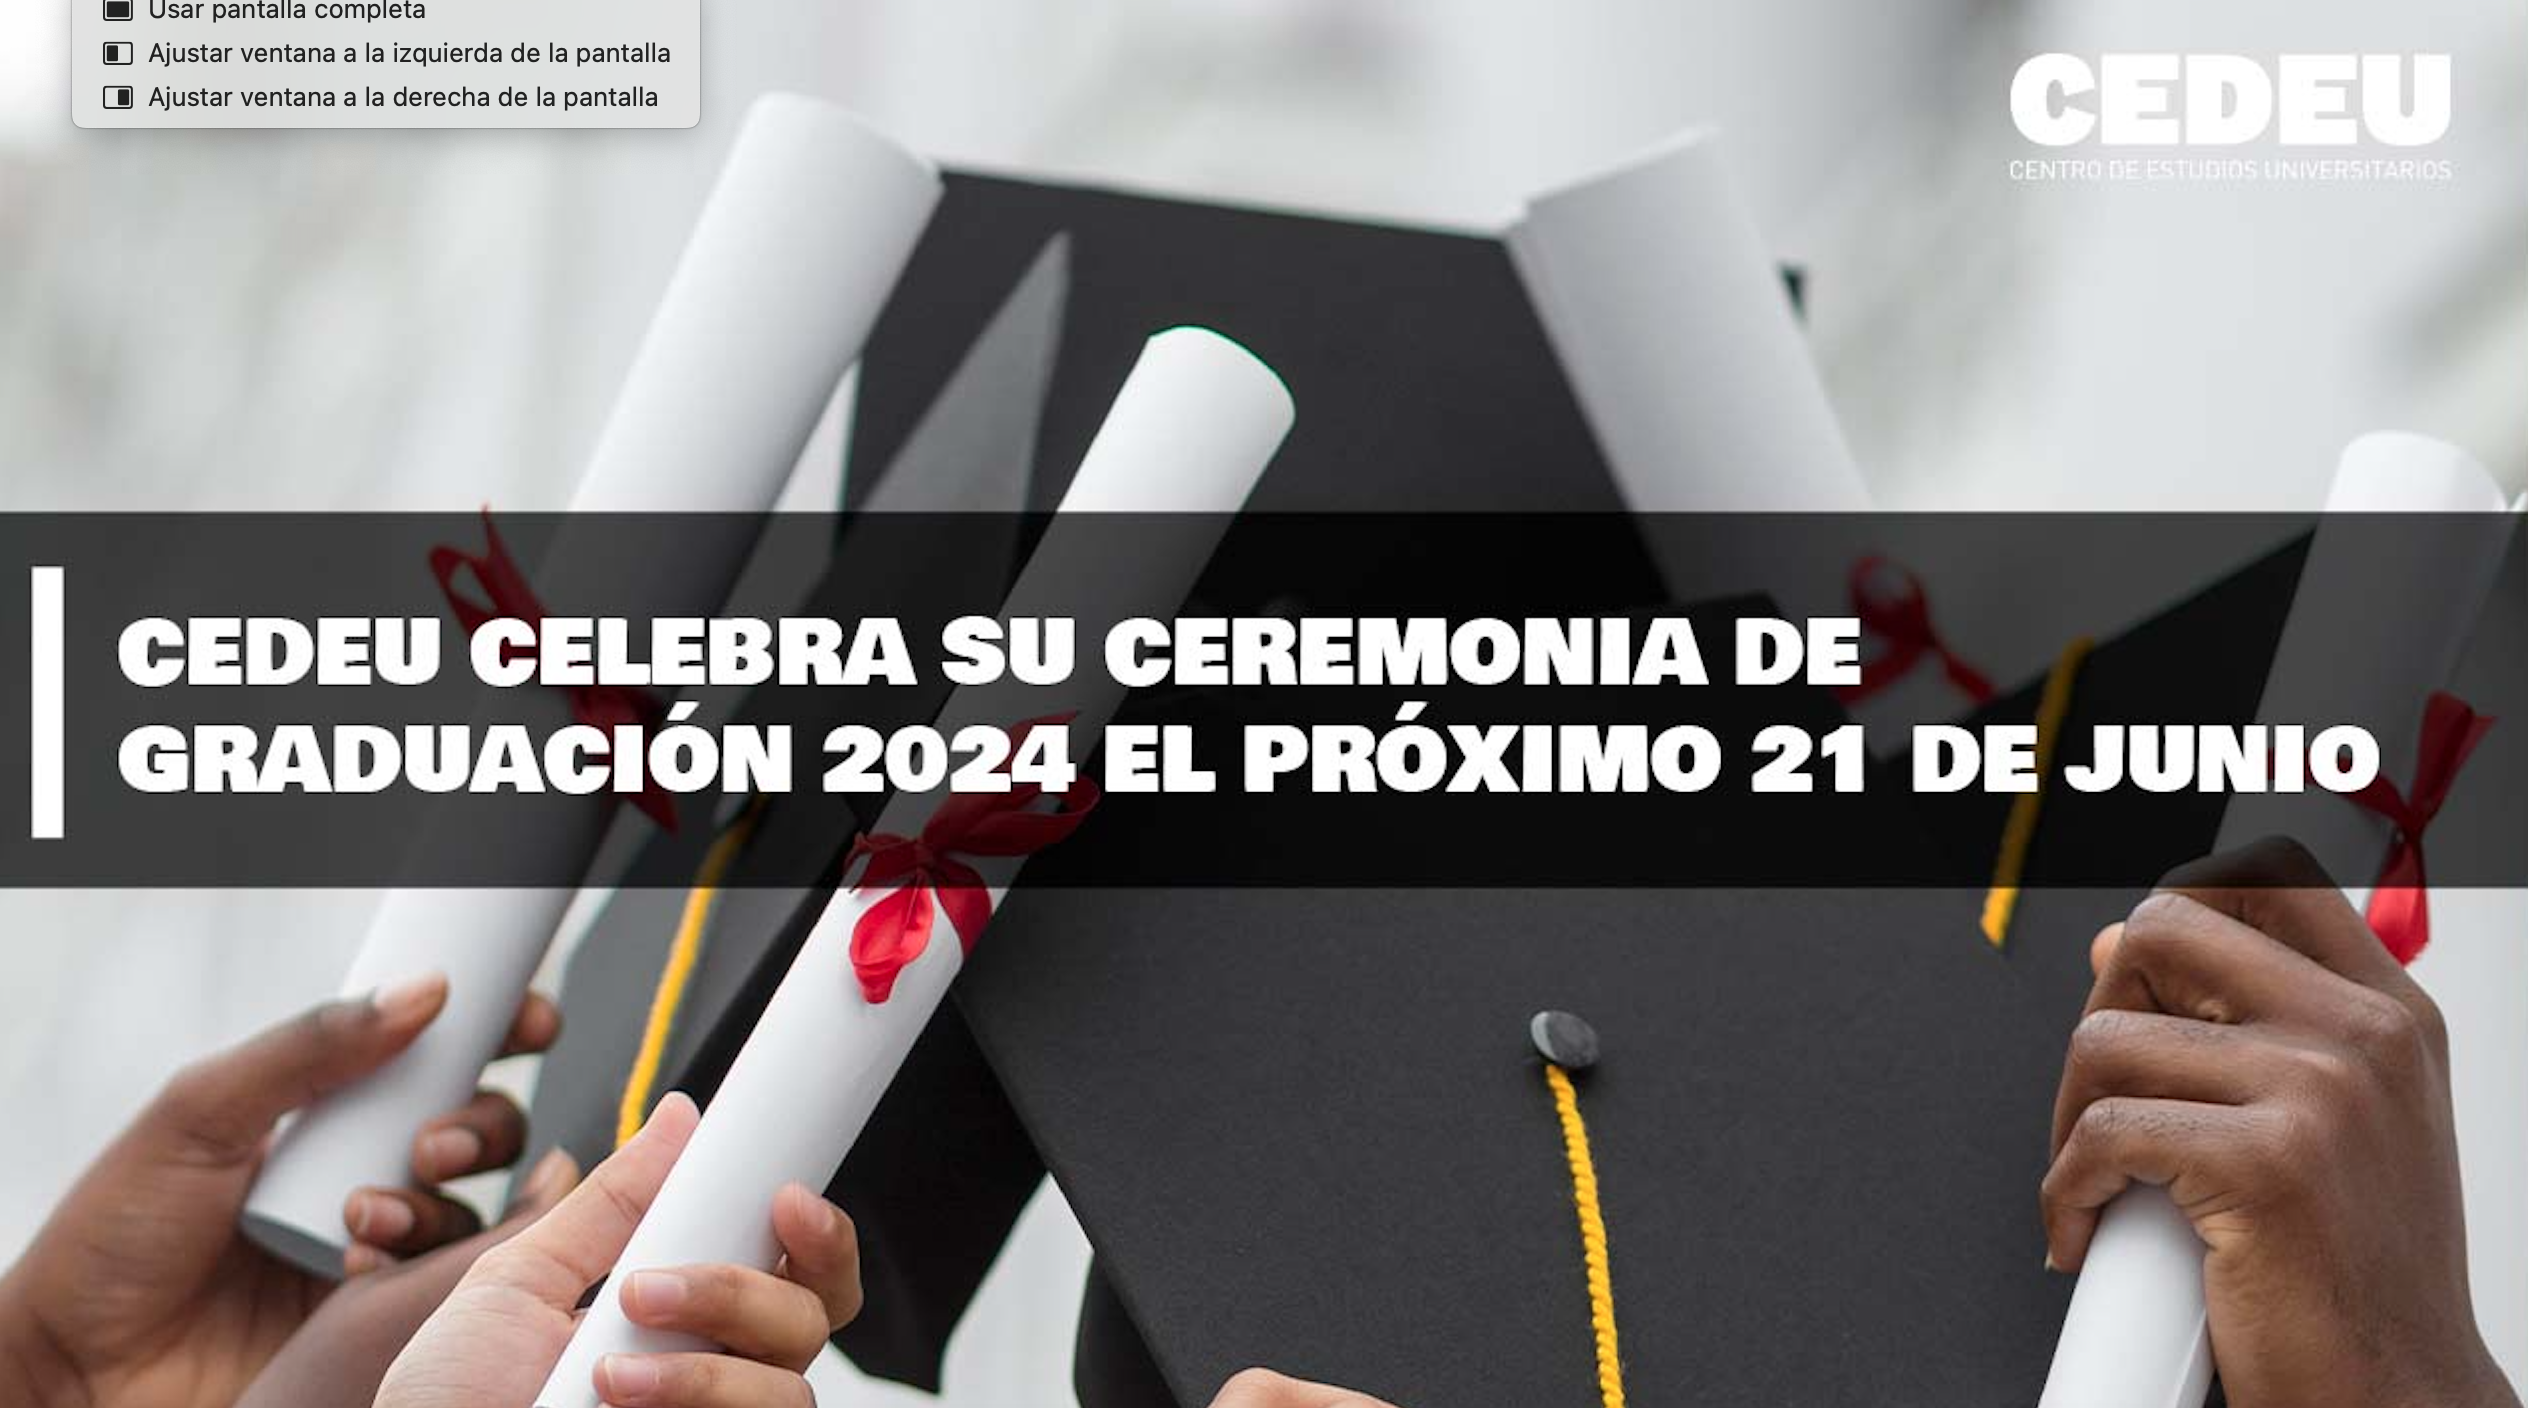 CEDEU celebra su Ceremonia de Graduación 2024 el próximo 21 de junio 